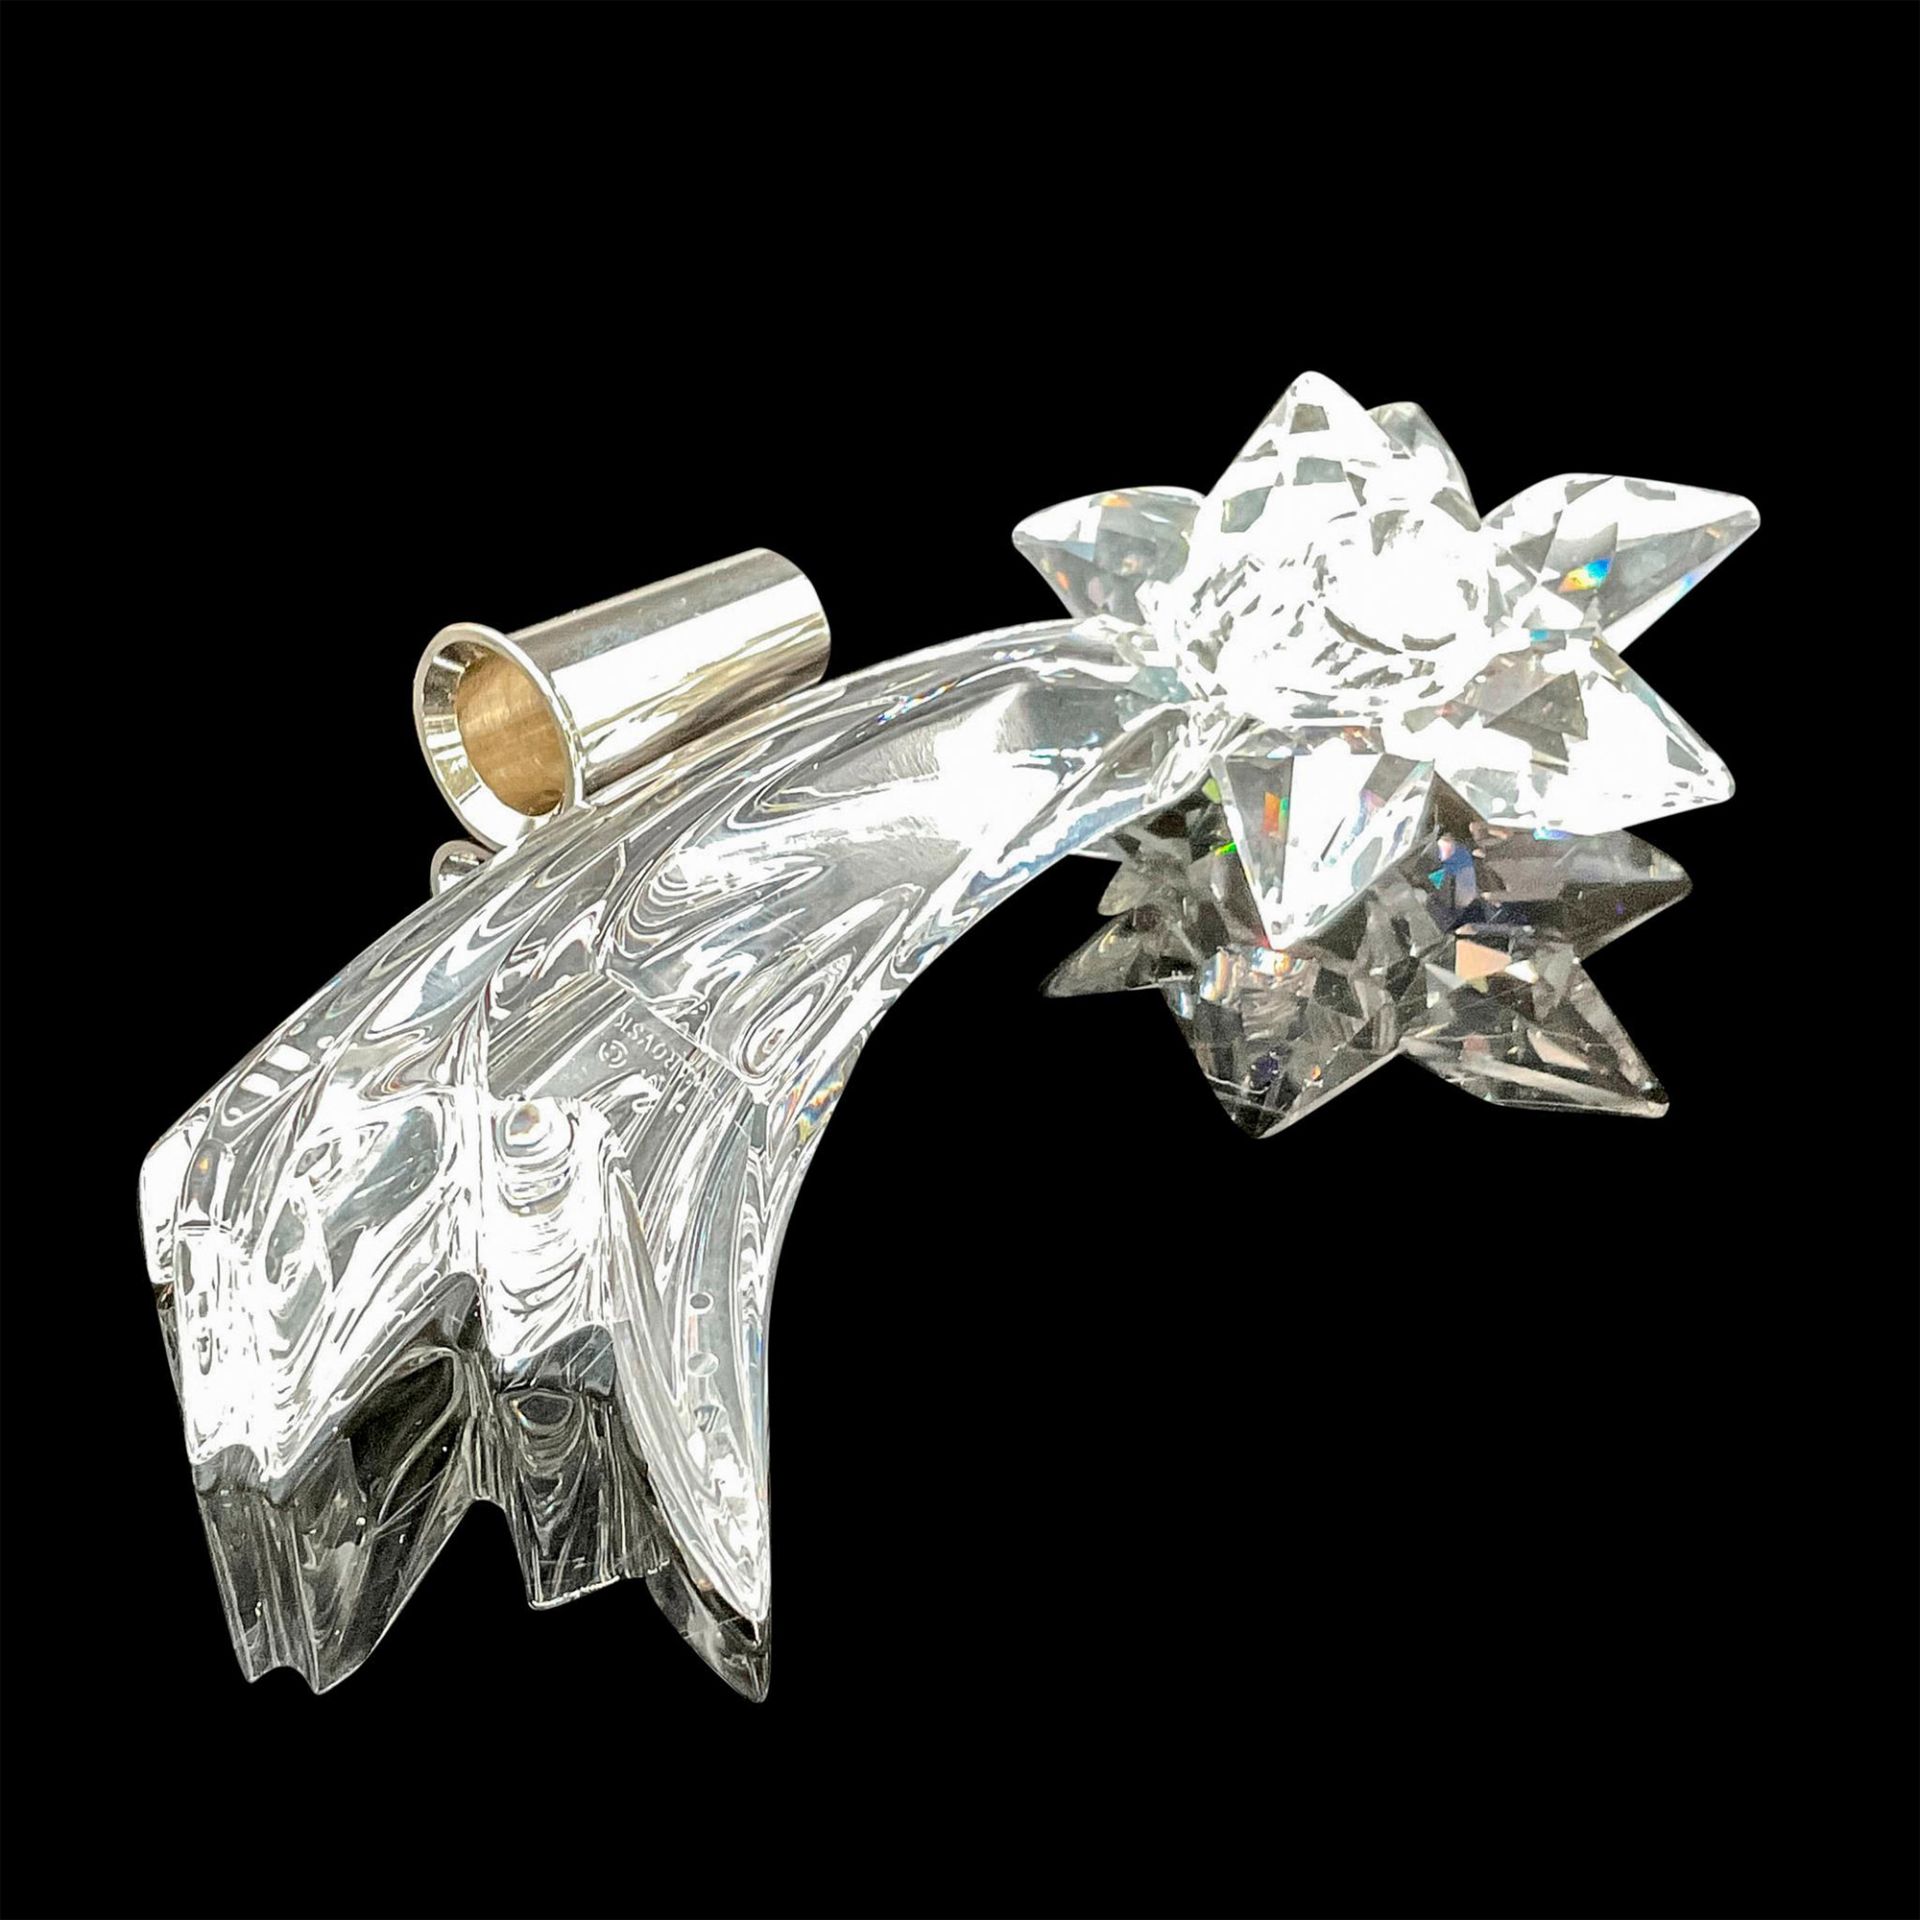 Swarovski Silver Crystal Comet Candleholder - Image 3 of 4